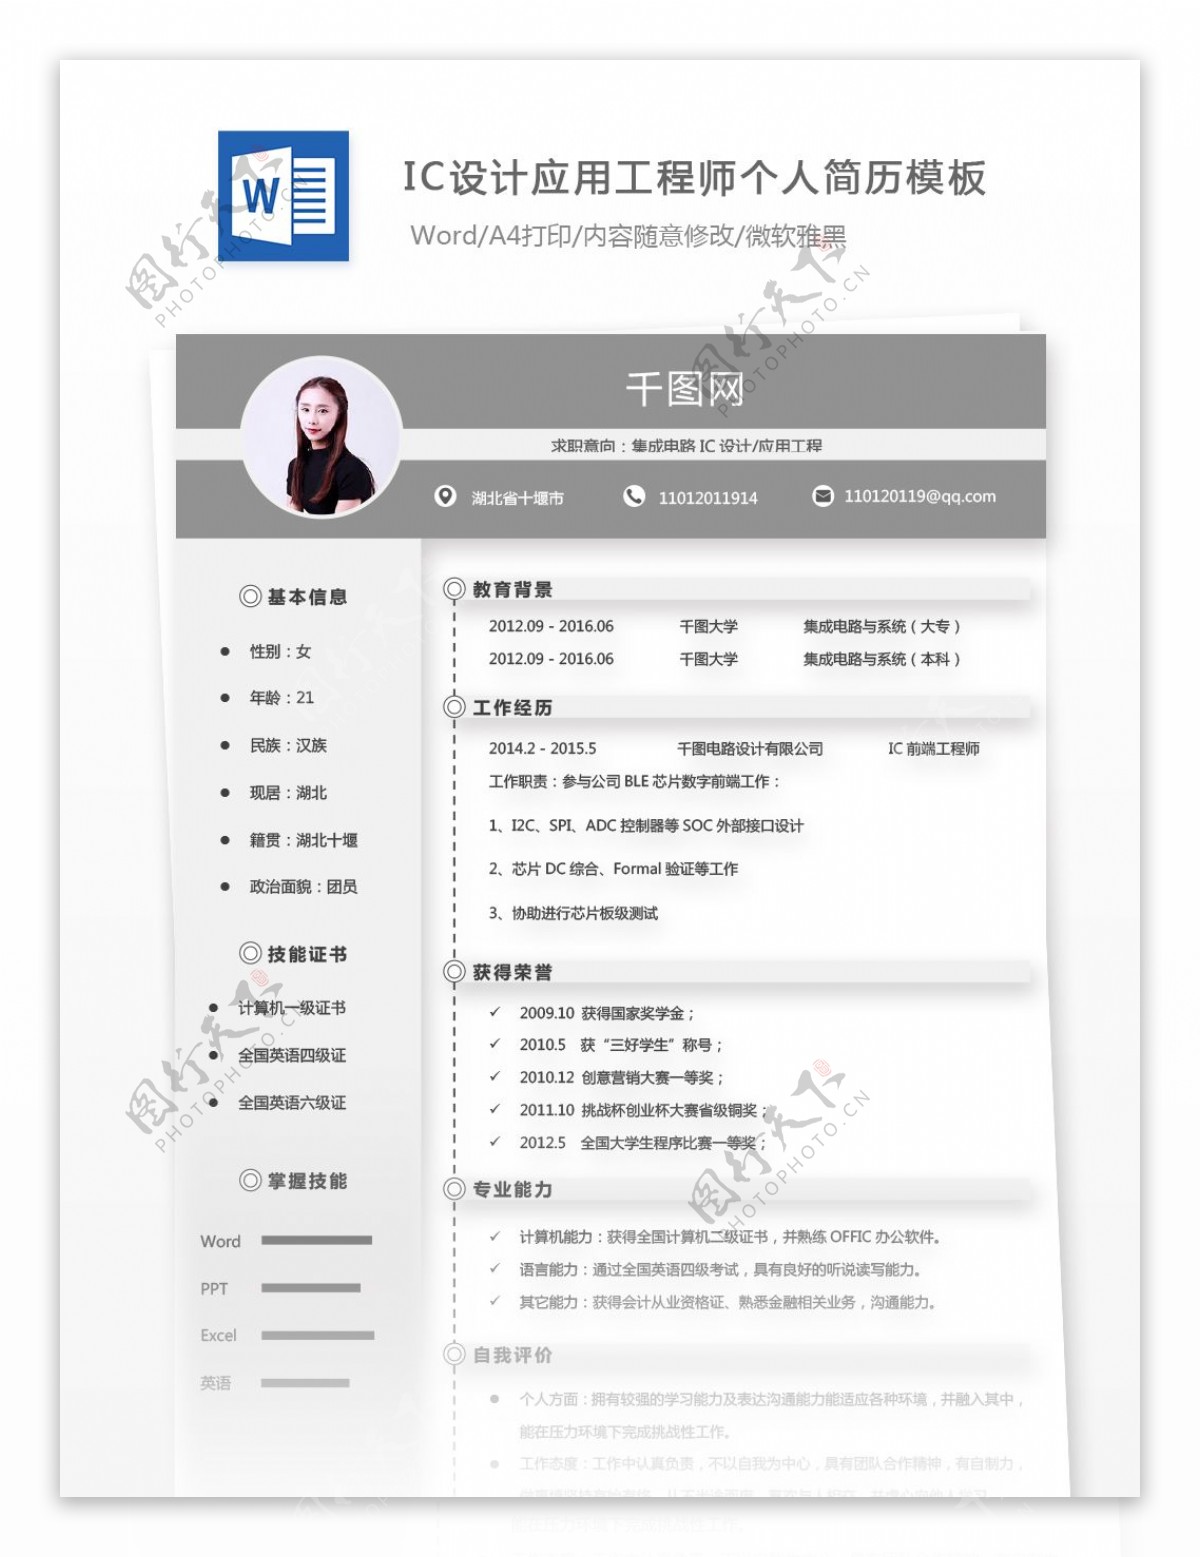 刘欣源集成电路ic设计应用工程师个人简历